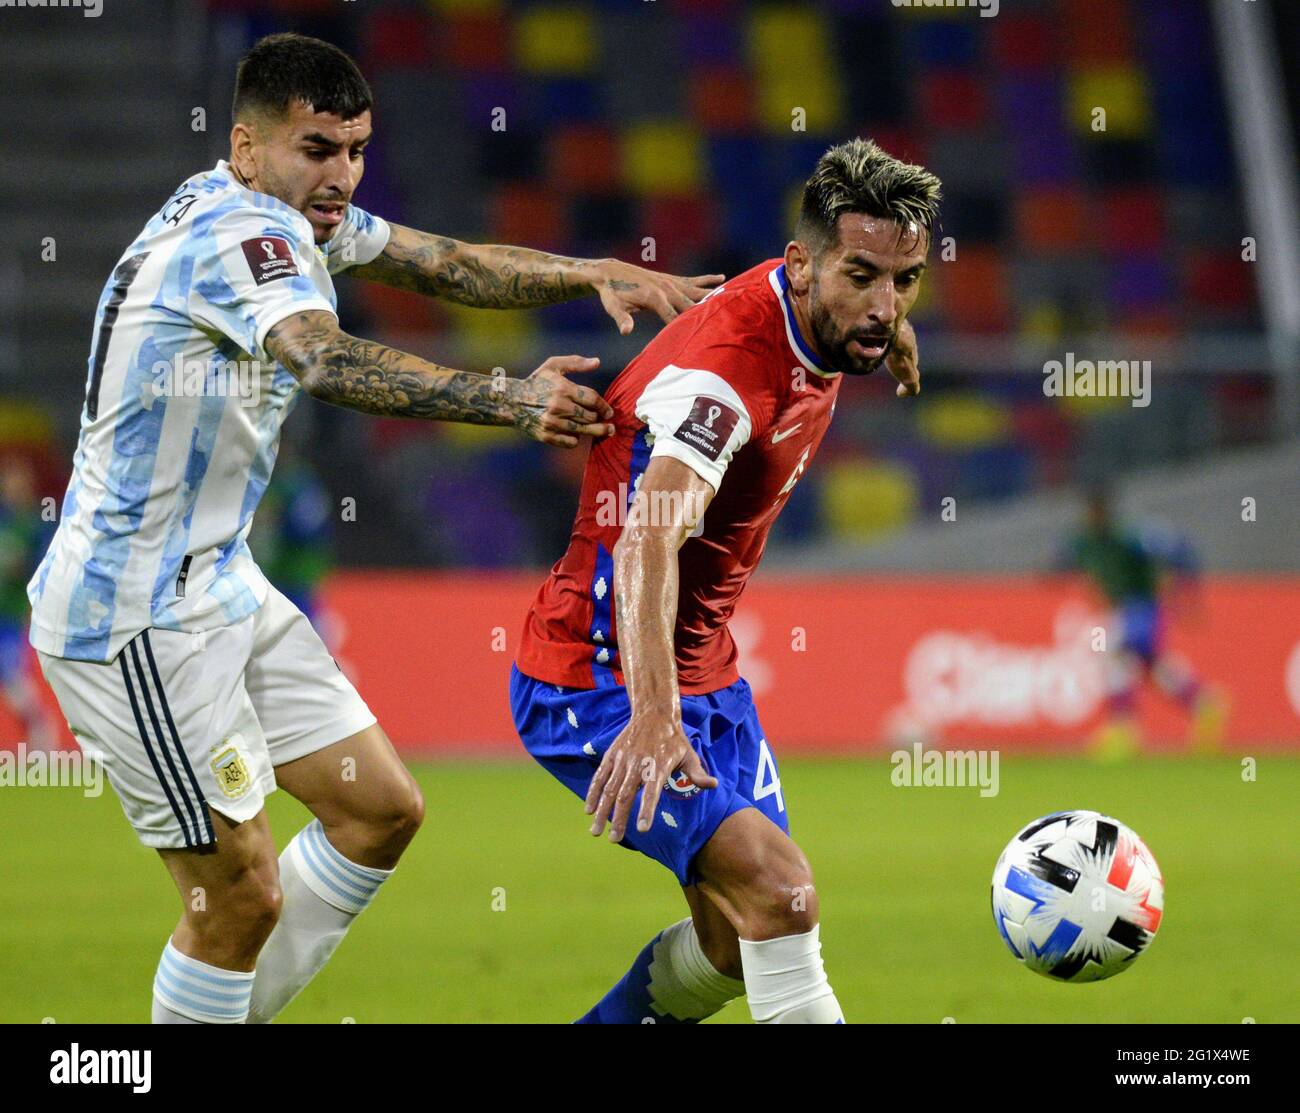 Joaquín Correa da Argentina disputa o lance com Mauricio Isla do Chile  durante a partida entre Argentina e Chile pela 7ª rodada das Eliminatórias Qatar  2022, no Estádio Único de Santiago del